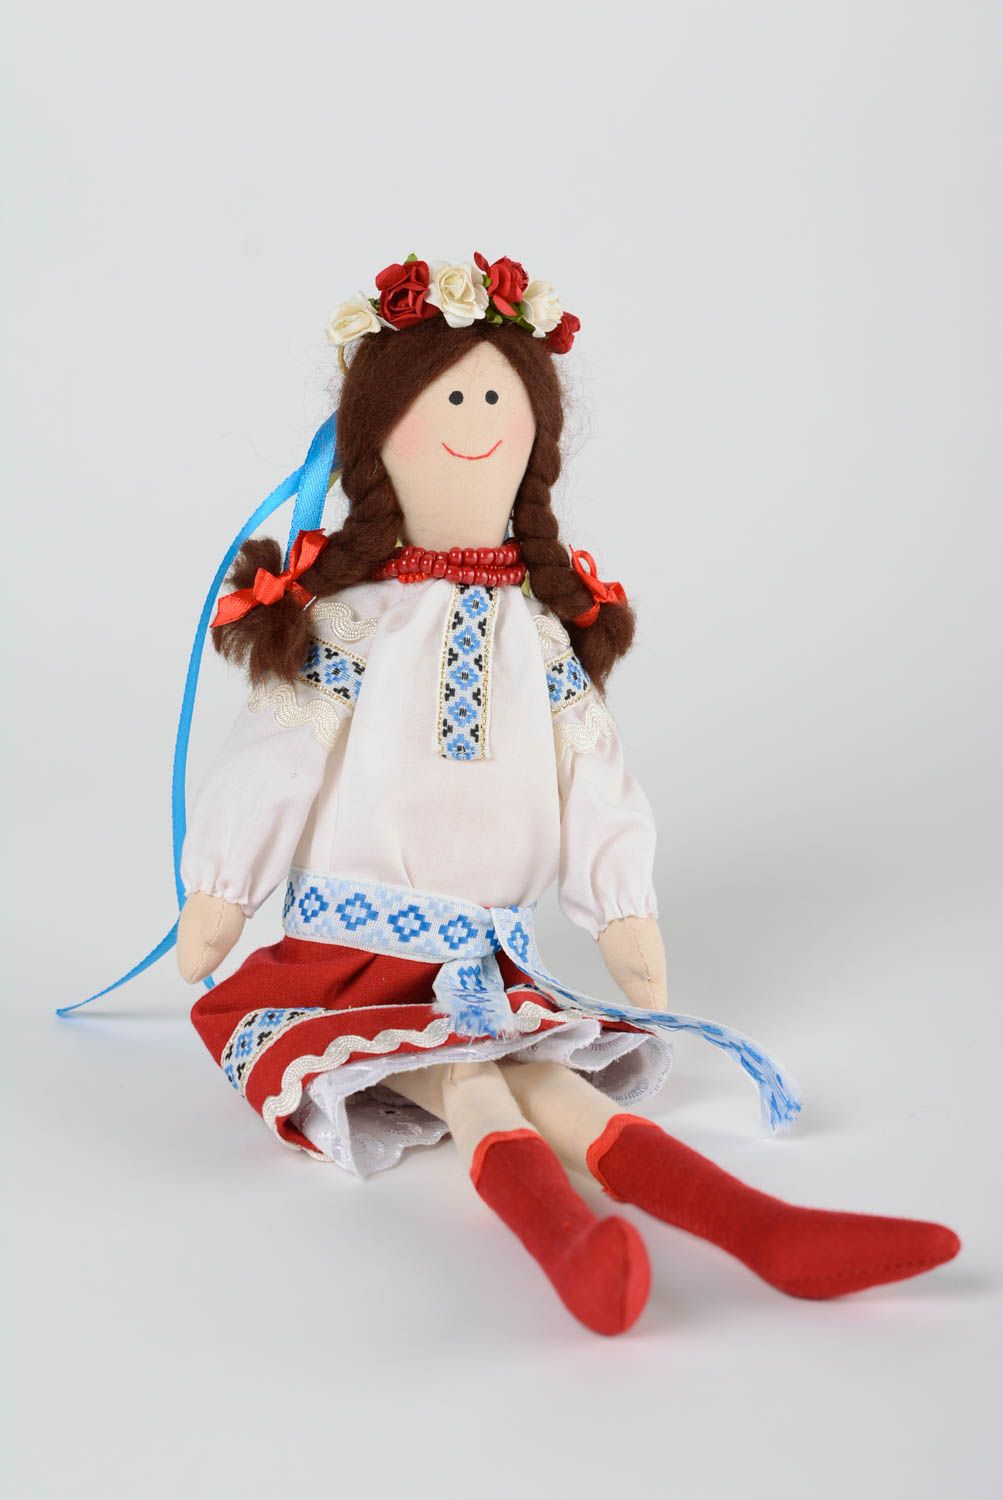 Мягкая кукла из хлопка ручной работы для ребенка оригинальная красивая авторская фото 1